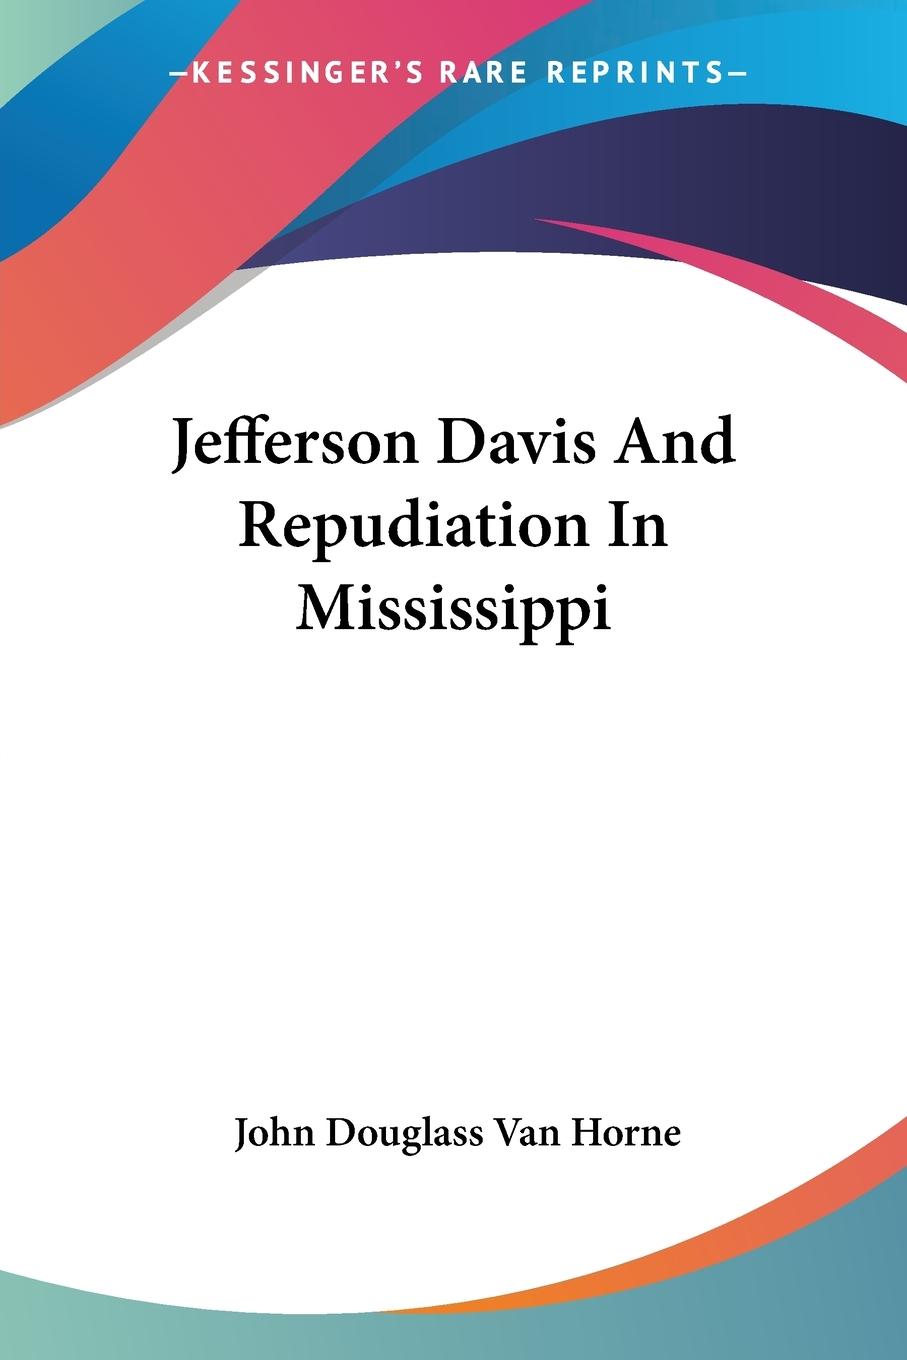 Jefferson Davis And Repudiation In Mississippi - Horne, John Douglass Van